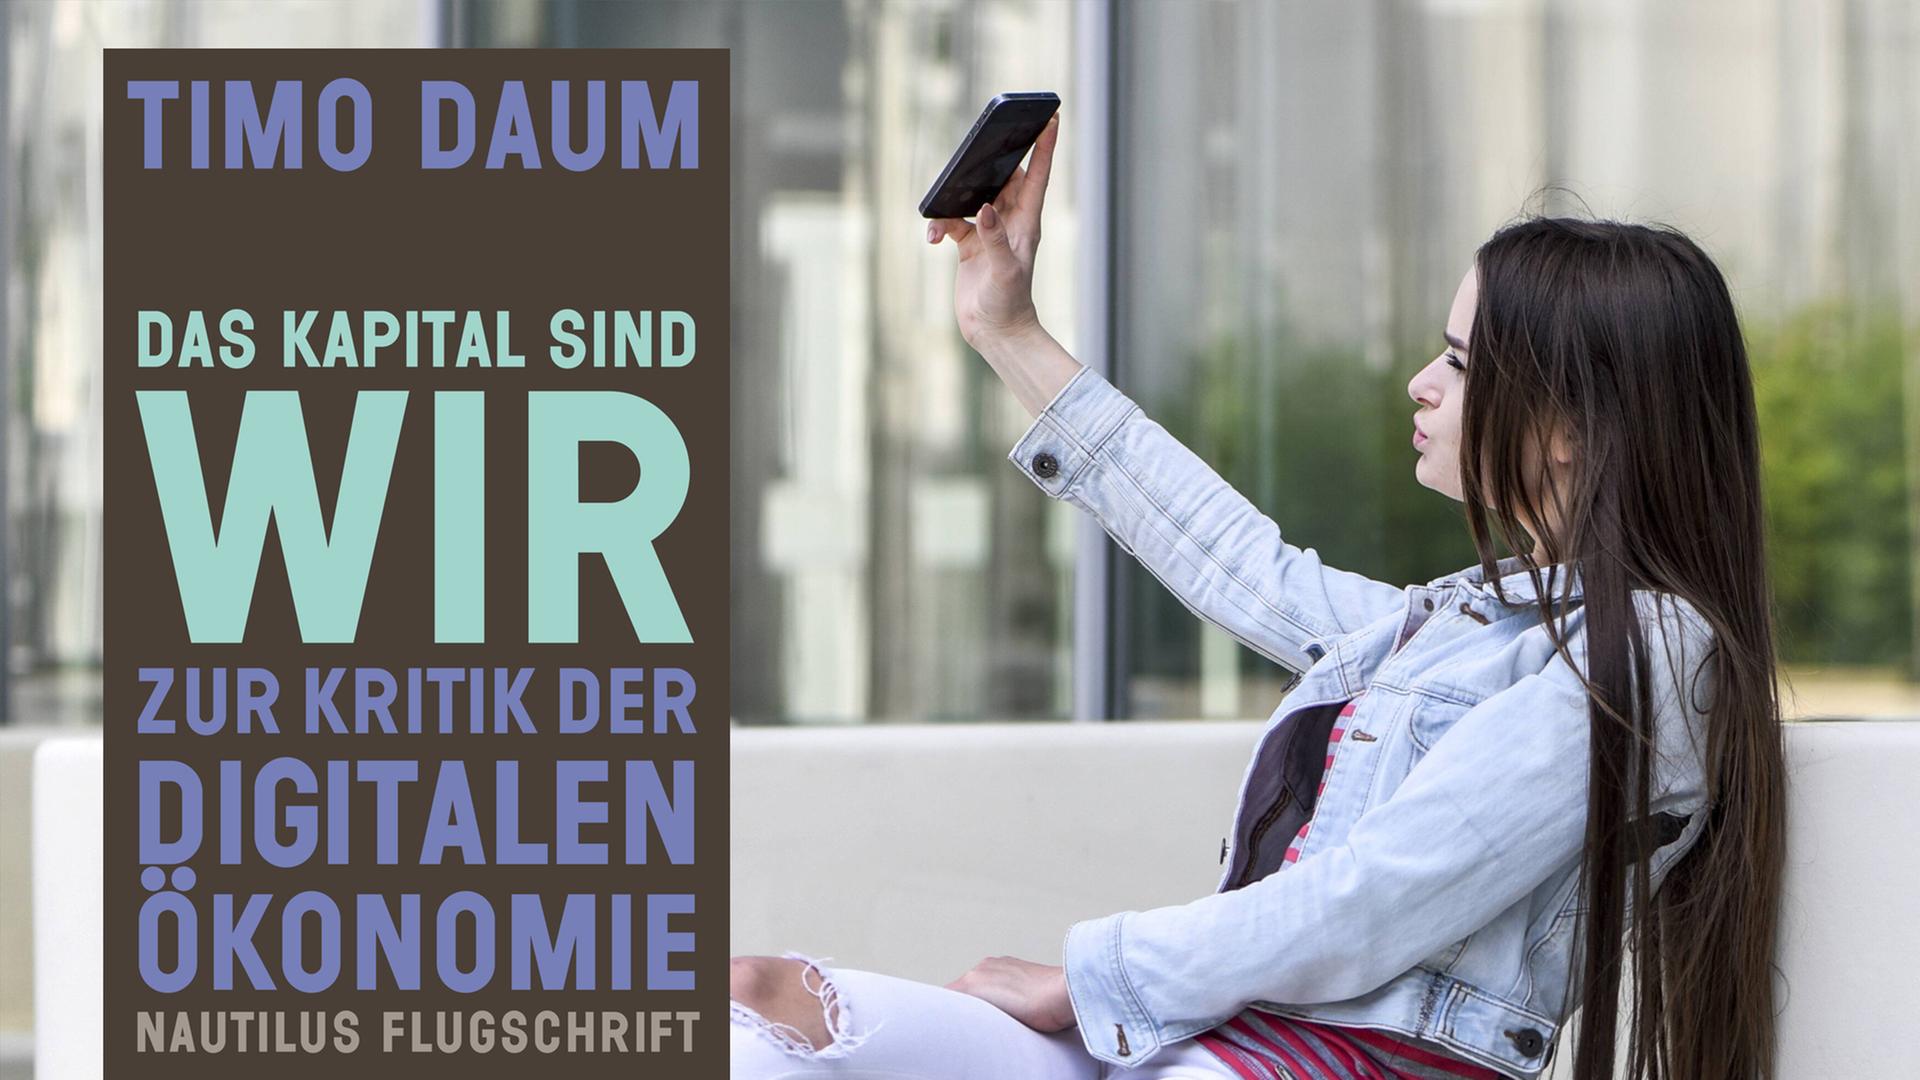 Cover von Timo Daums Buch "Das Kapital sind wir". Im Hintergrund ist eine junge Frau zu sehen, die ein Selfie macht.